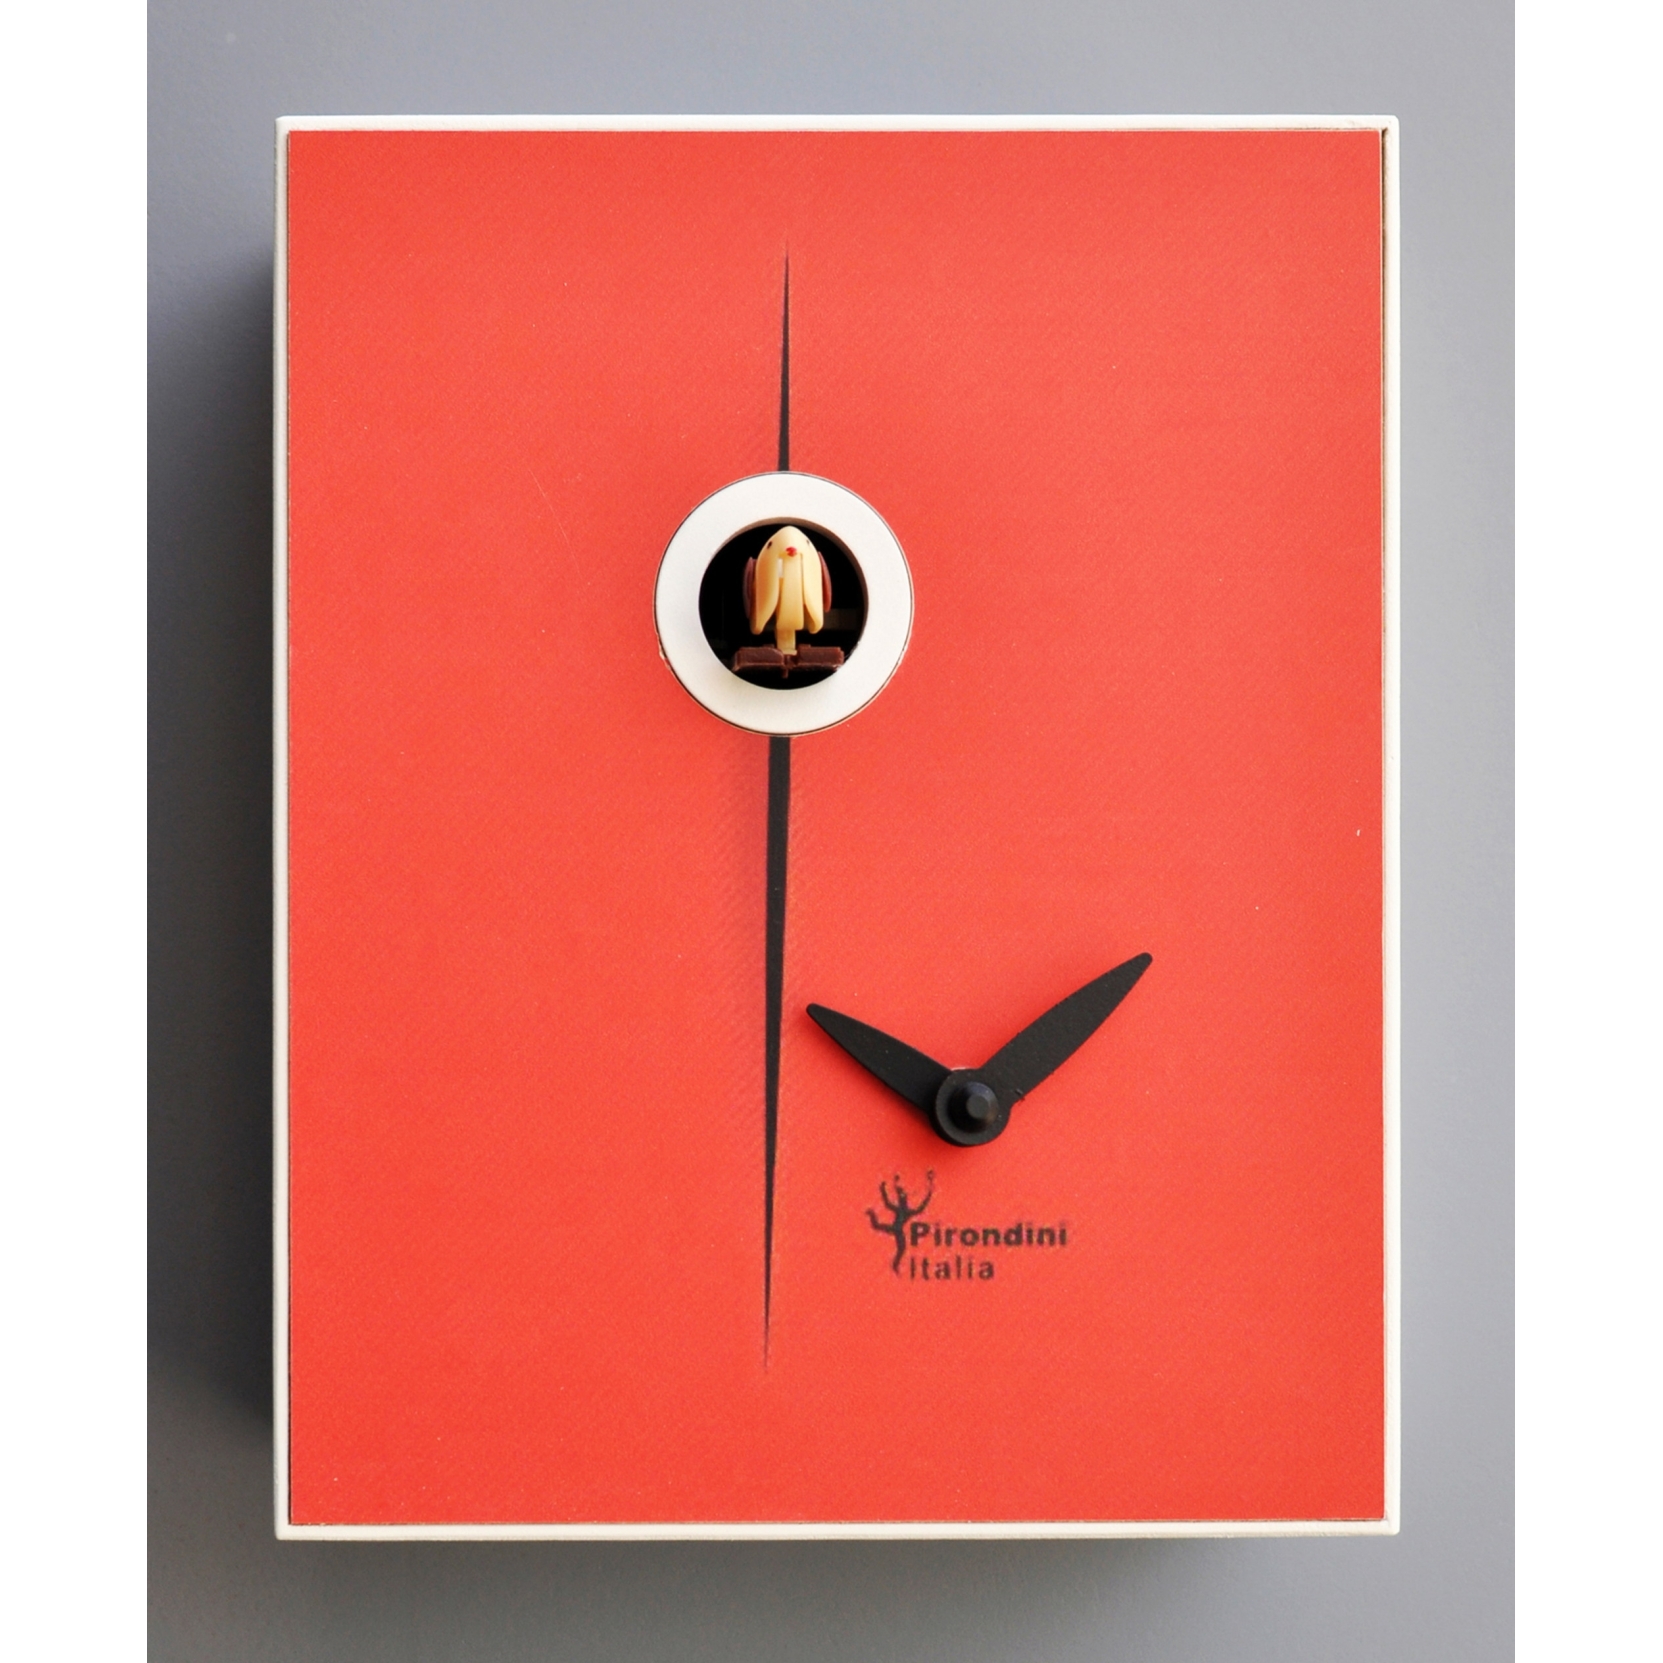 13 idee su Orologio a cucu  orologi a cucù, orologio, pittura in